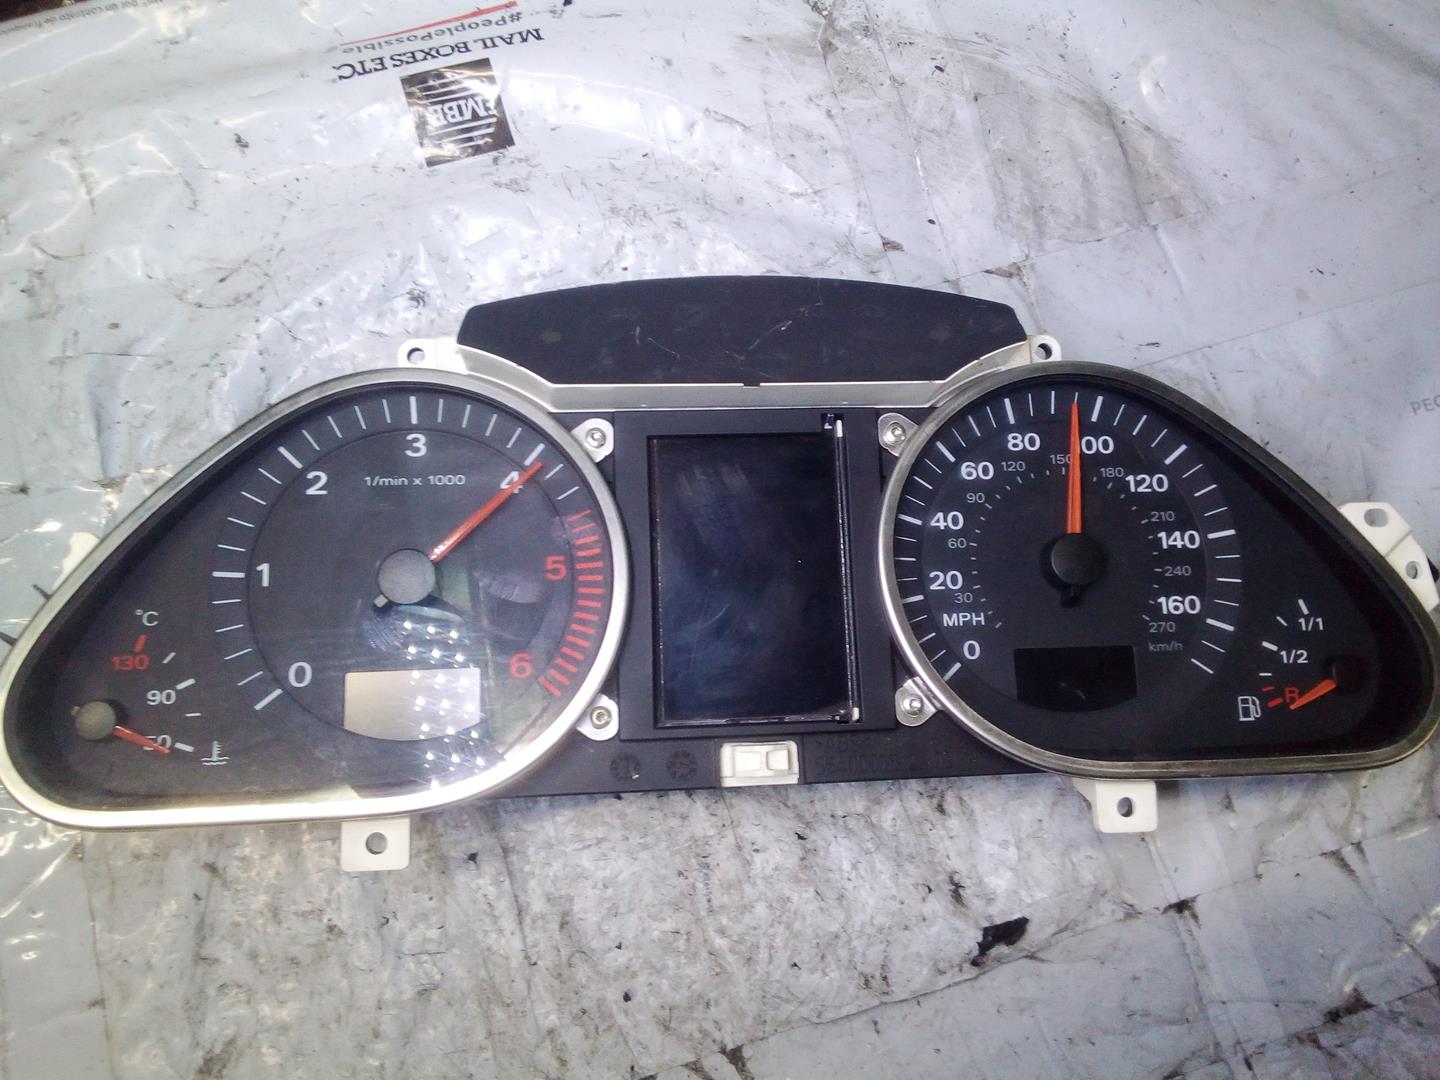 AUDI A6 C6/4F (2004-2011) Speedometer 4F0920950L, 4F0910900A, 503000730805 25248128